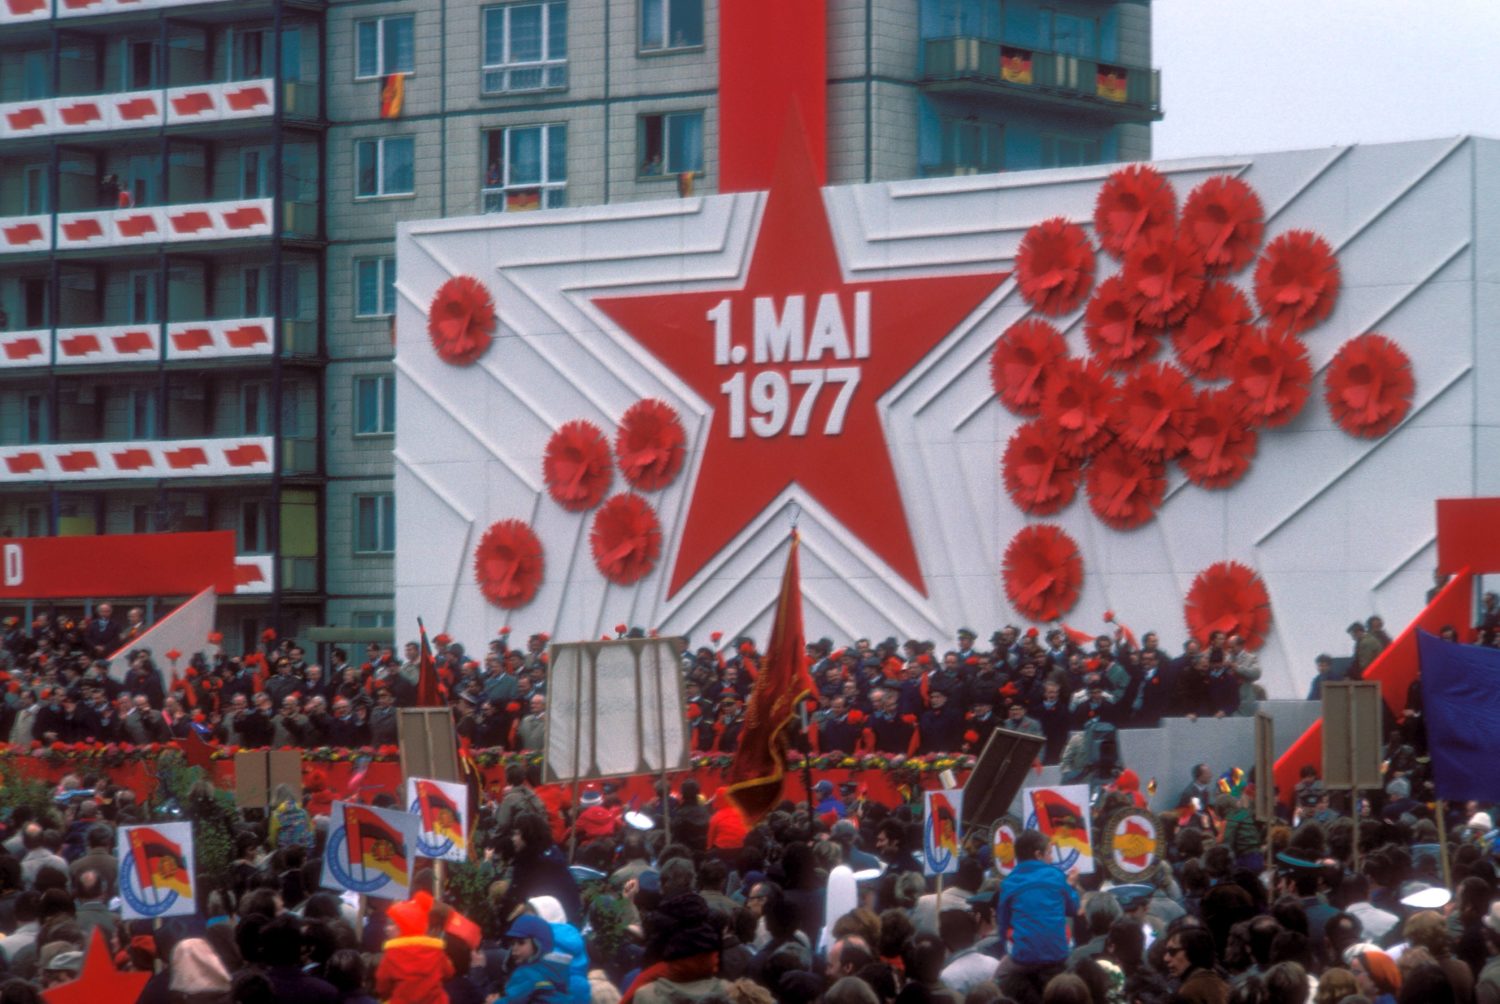 Teilnehmer der offiziellen Parade zum 1. Mai in Ost-Berlin, 1977. Foto: Imago/Sven Simon